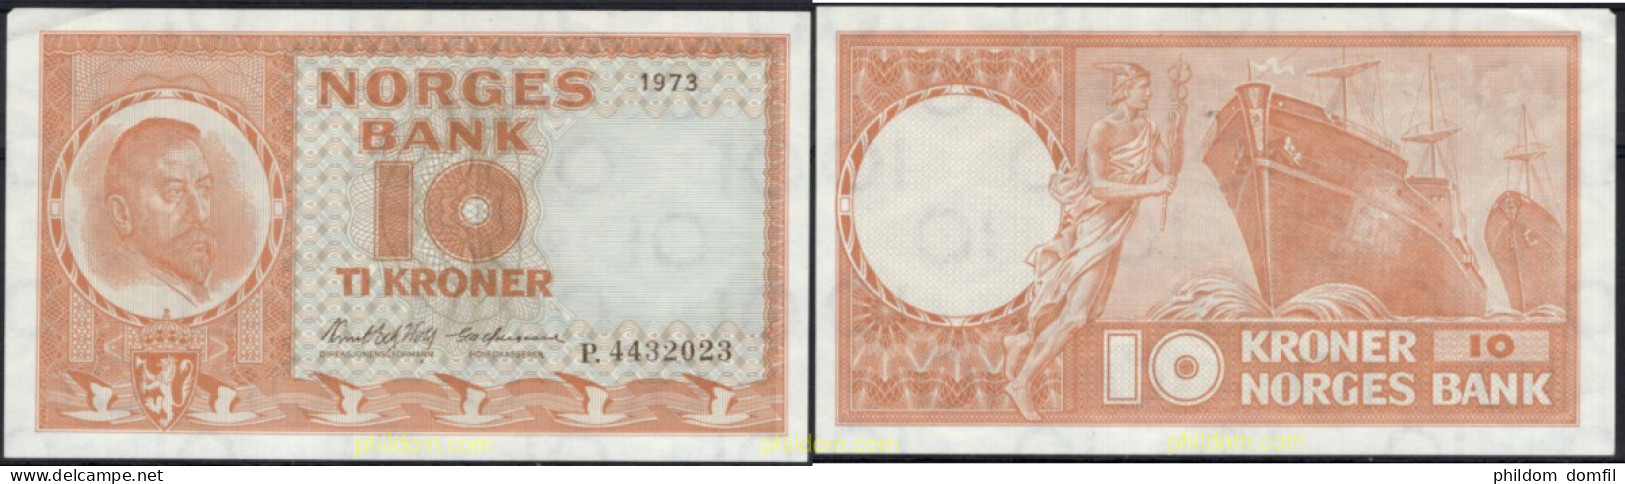 8536 NORUEGA 1973 NORWAY NORGES BANK 1973 10 KRONER - Norwegen